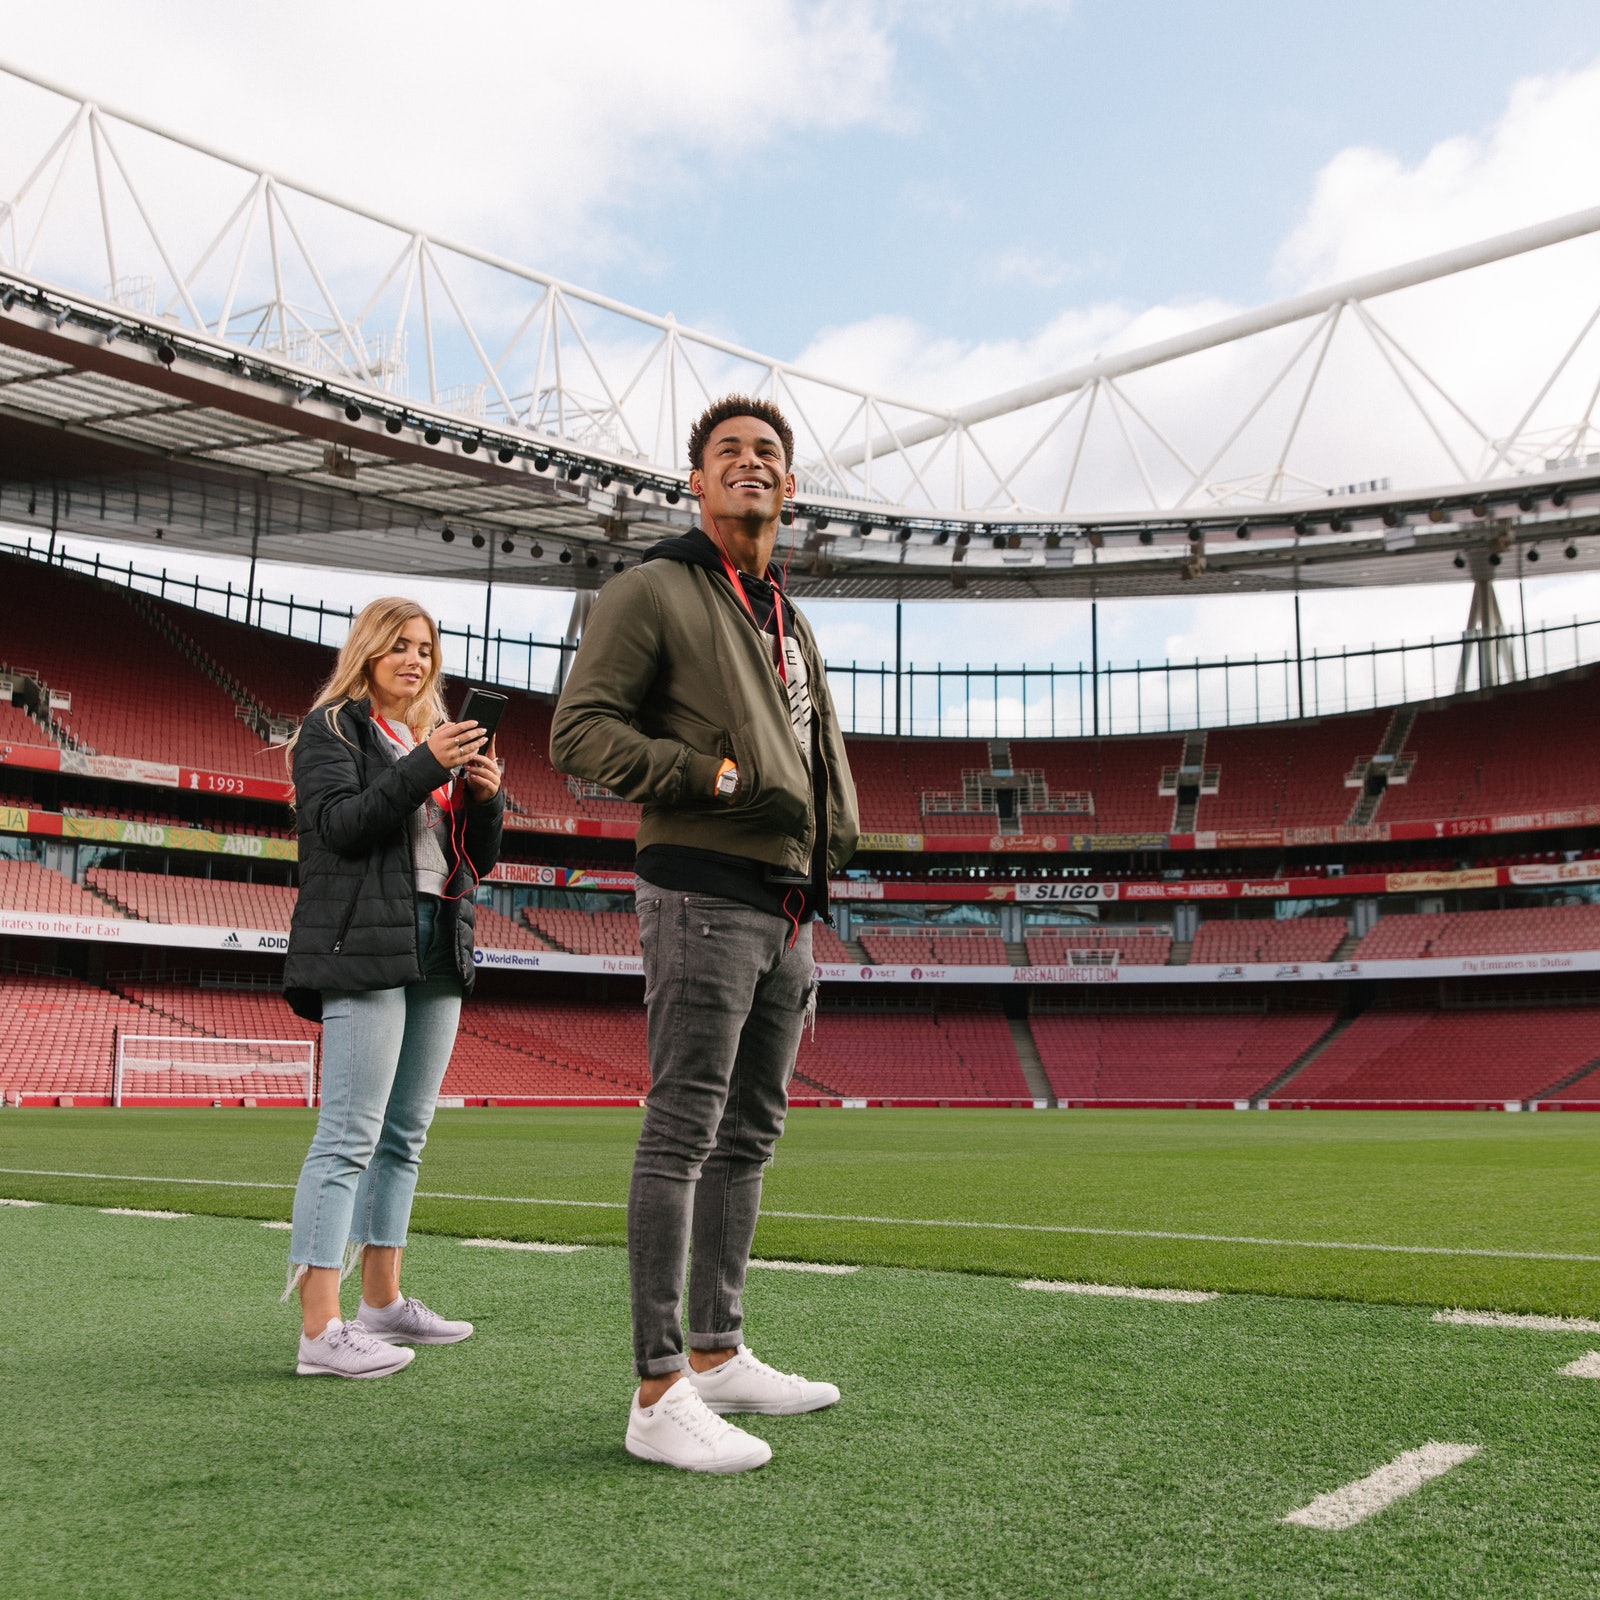 Arsenal FC: Emirates Stadium Tour in United Kingdom